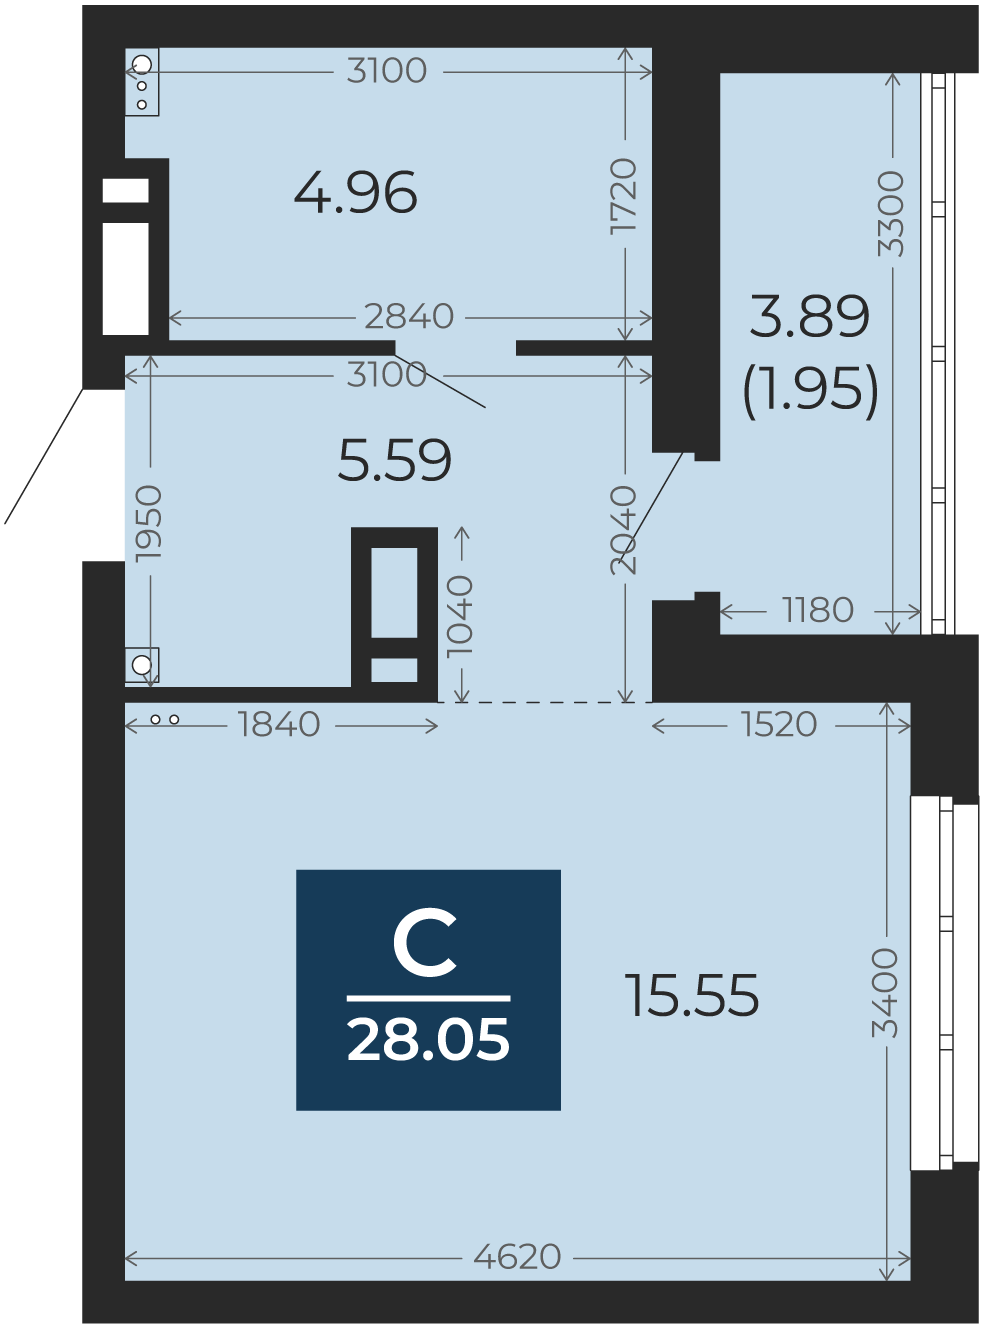 Квартира № 113, Студия, 28.05 кв. м, 11 этаж